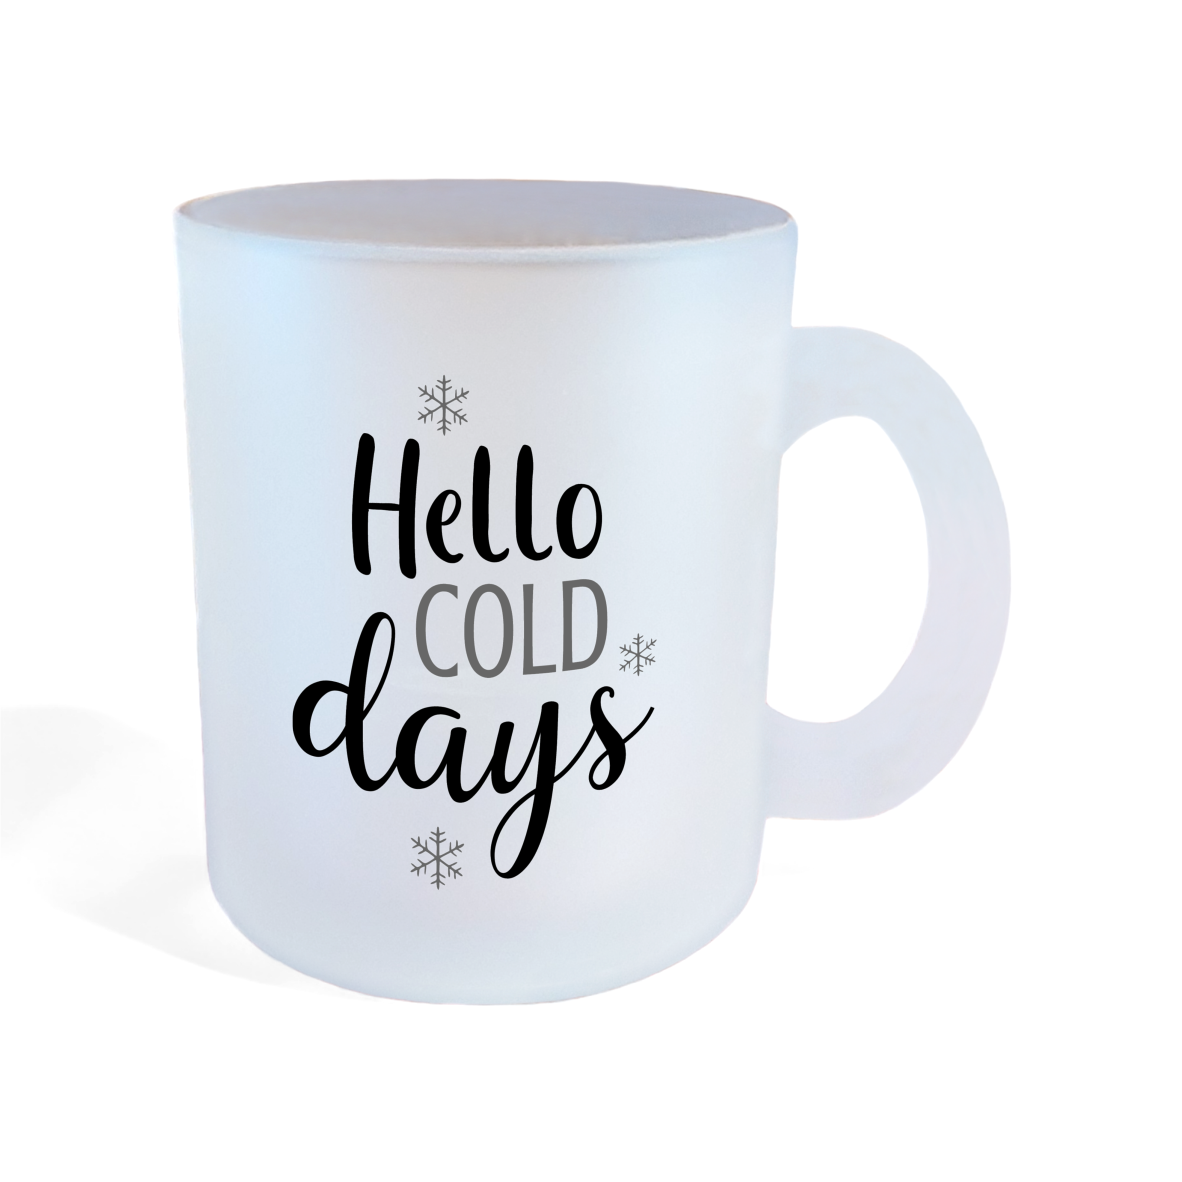 Glastasse "Hello cold days"